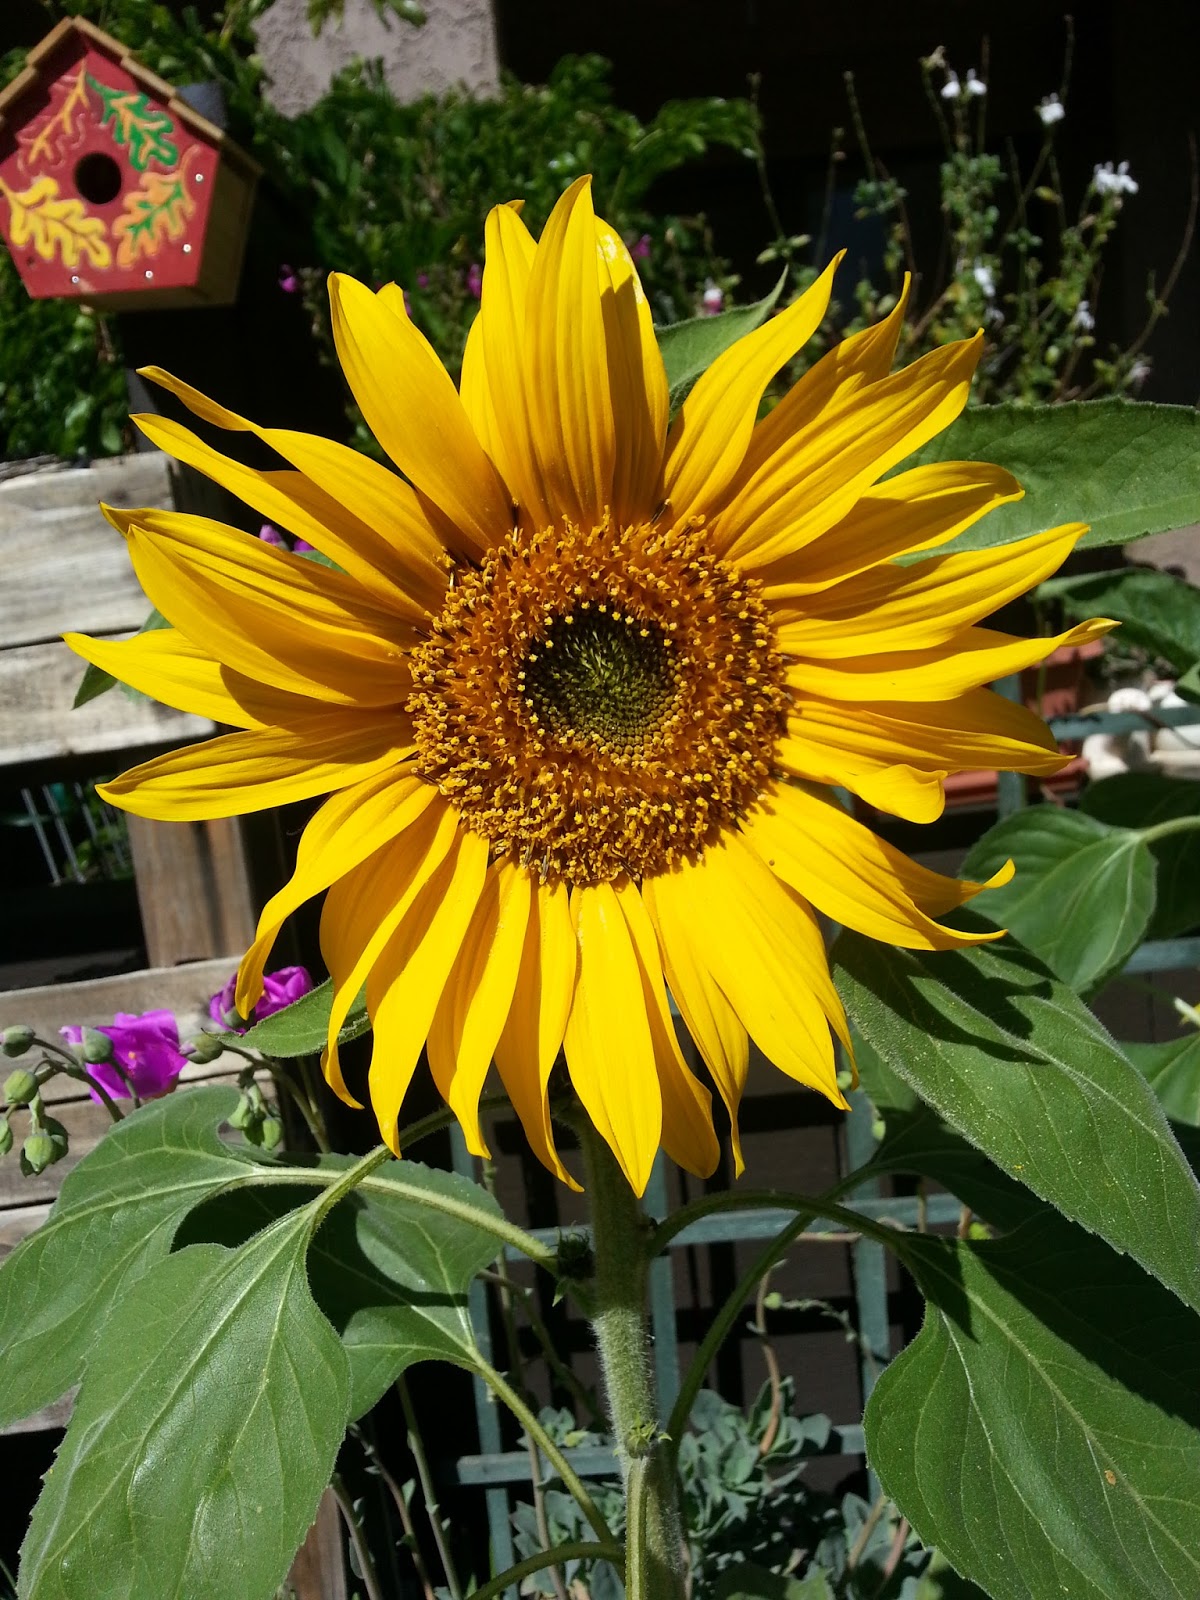 Sunflowers like God